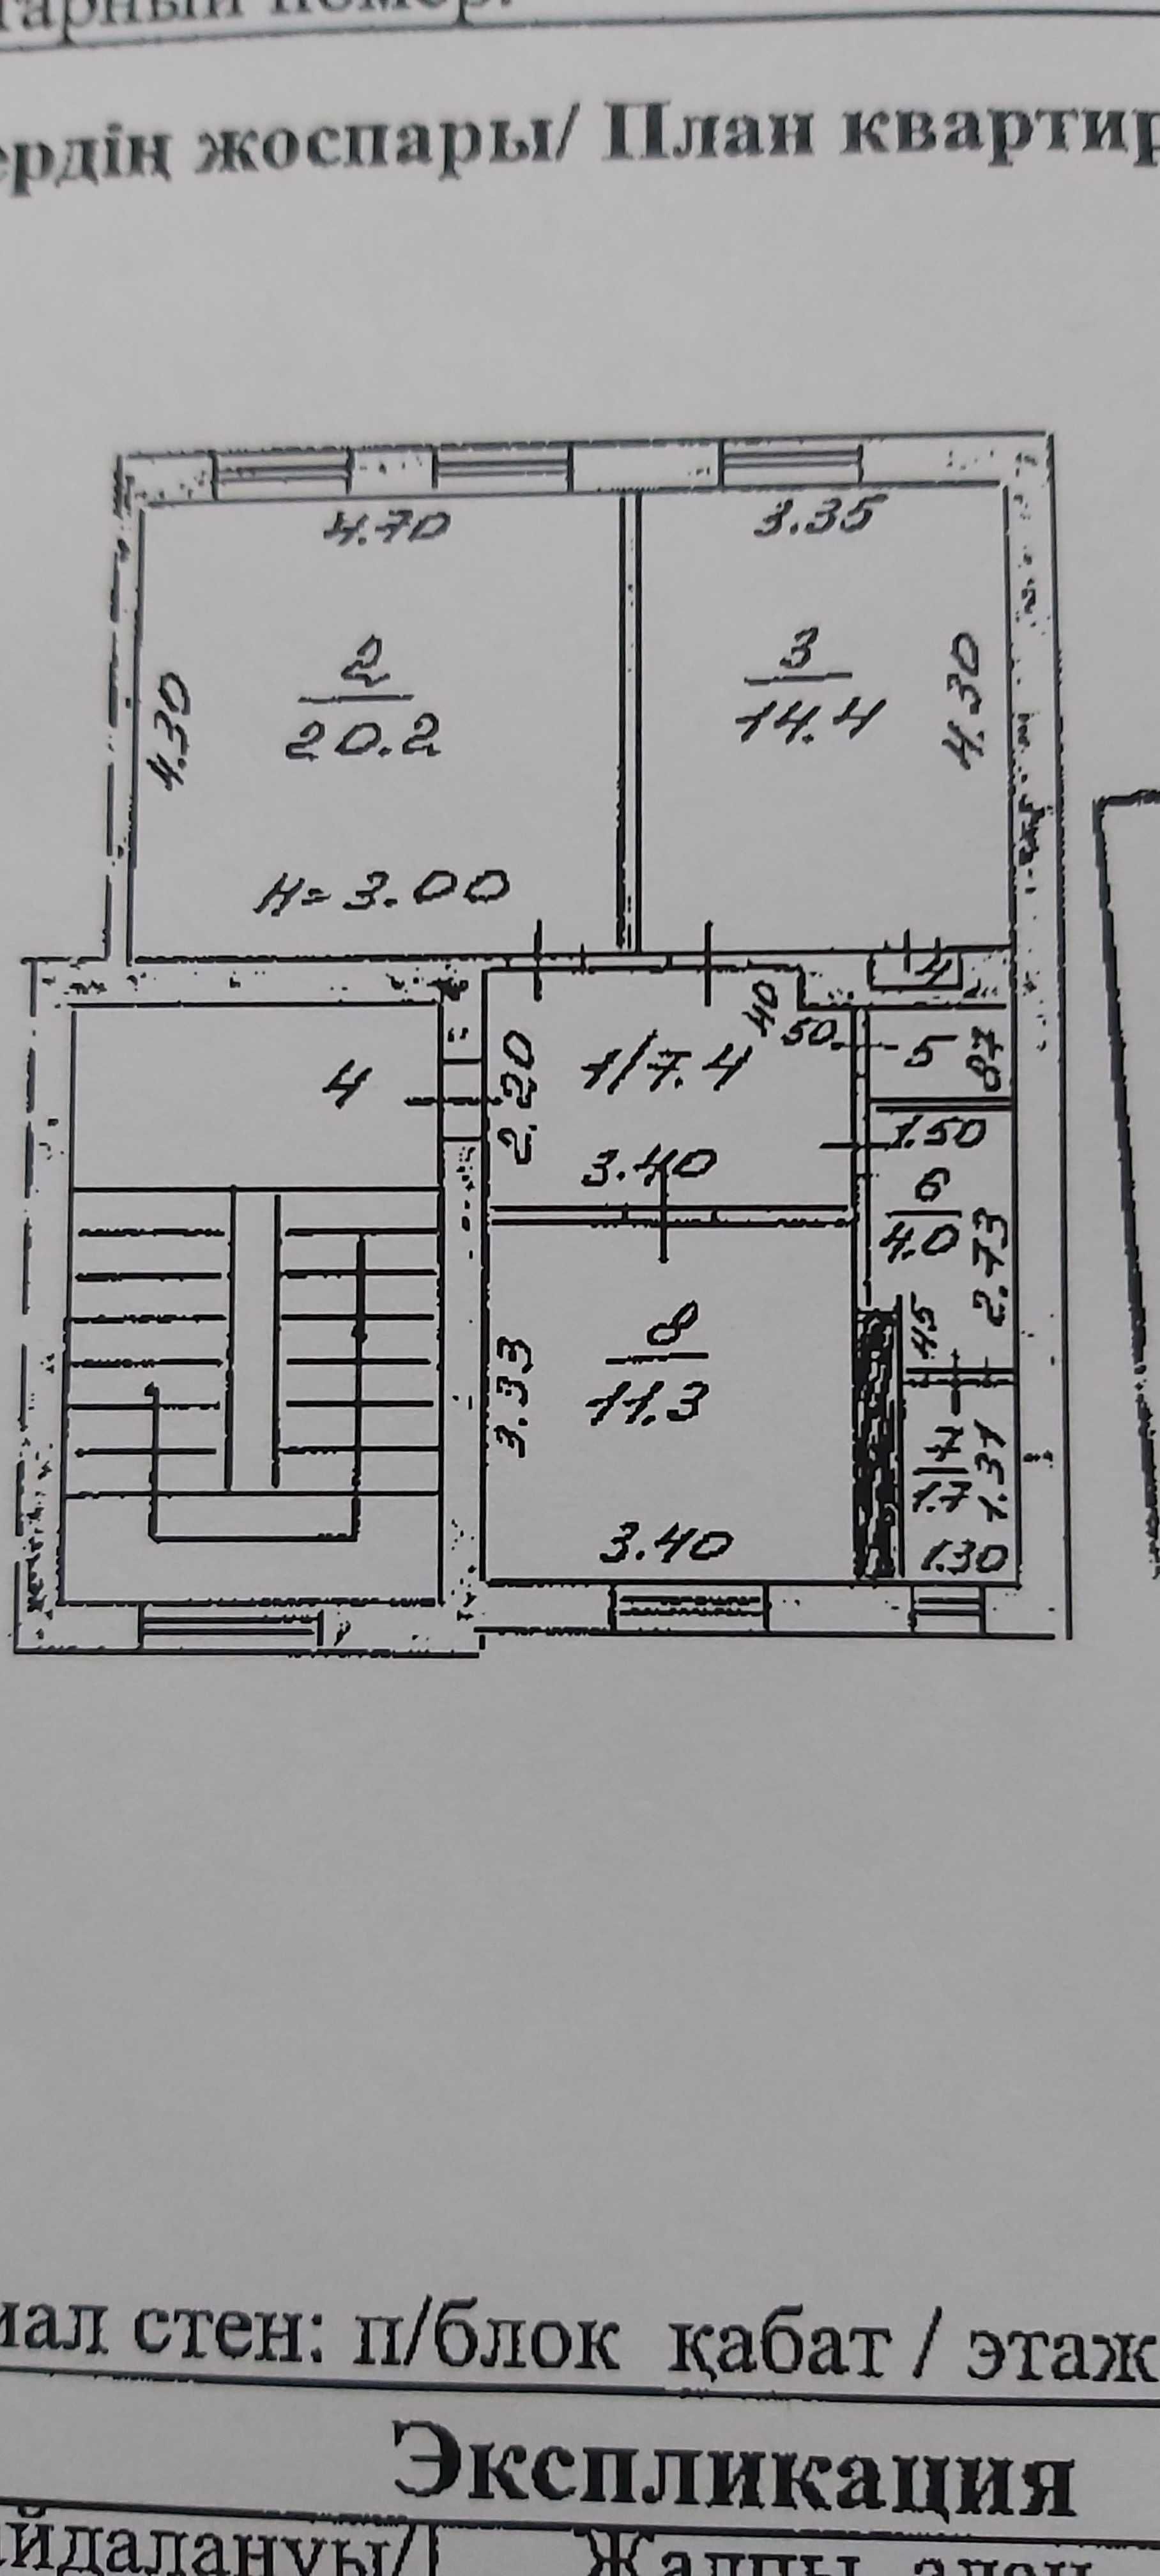 Продам 2-х комн.  нестандартной планировки 65 кв.м высокие потолки